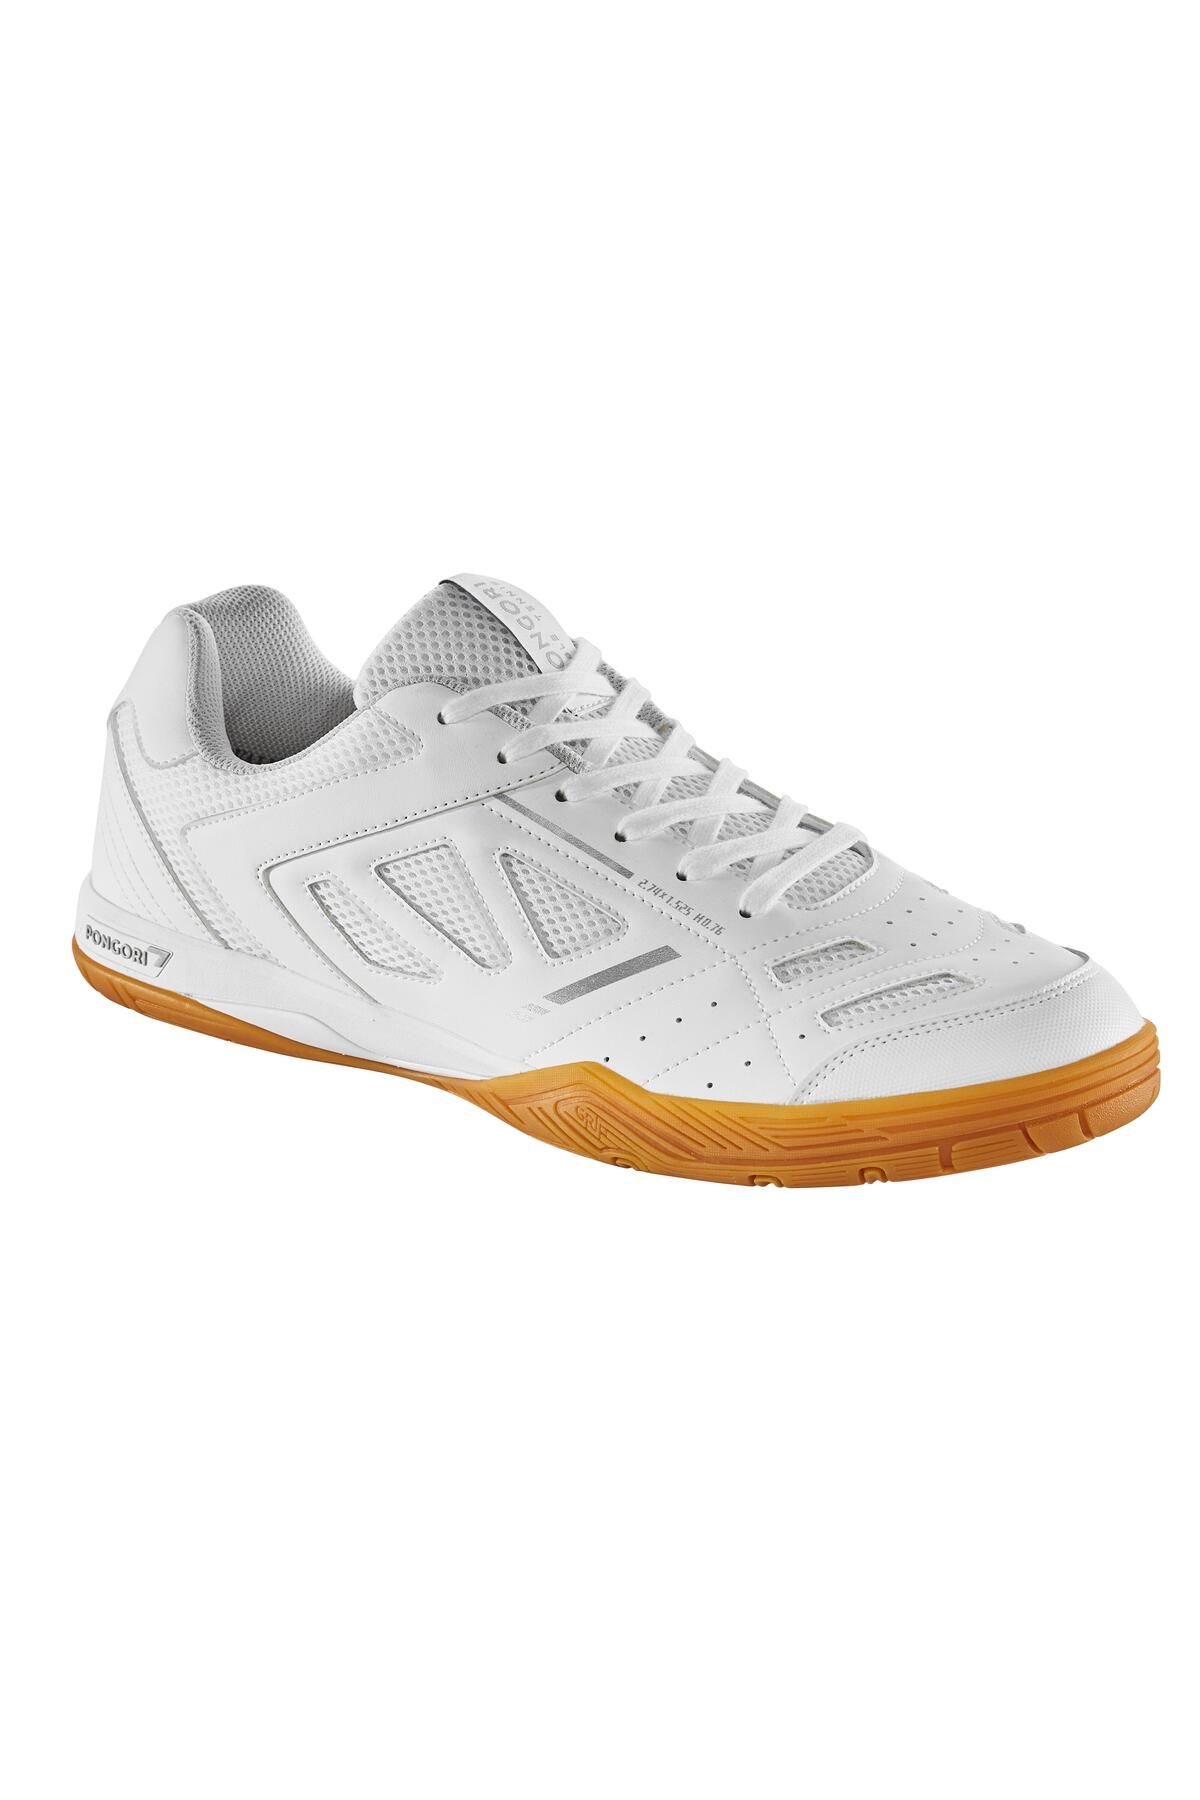 Decathlon Masa Tenisi Ayakkabısı - Beyaz / Gümüş - TTS 500 New